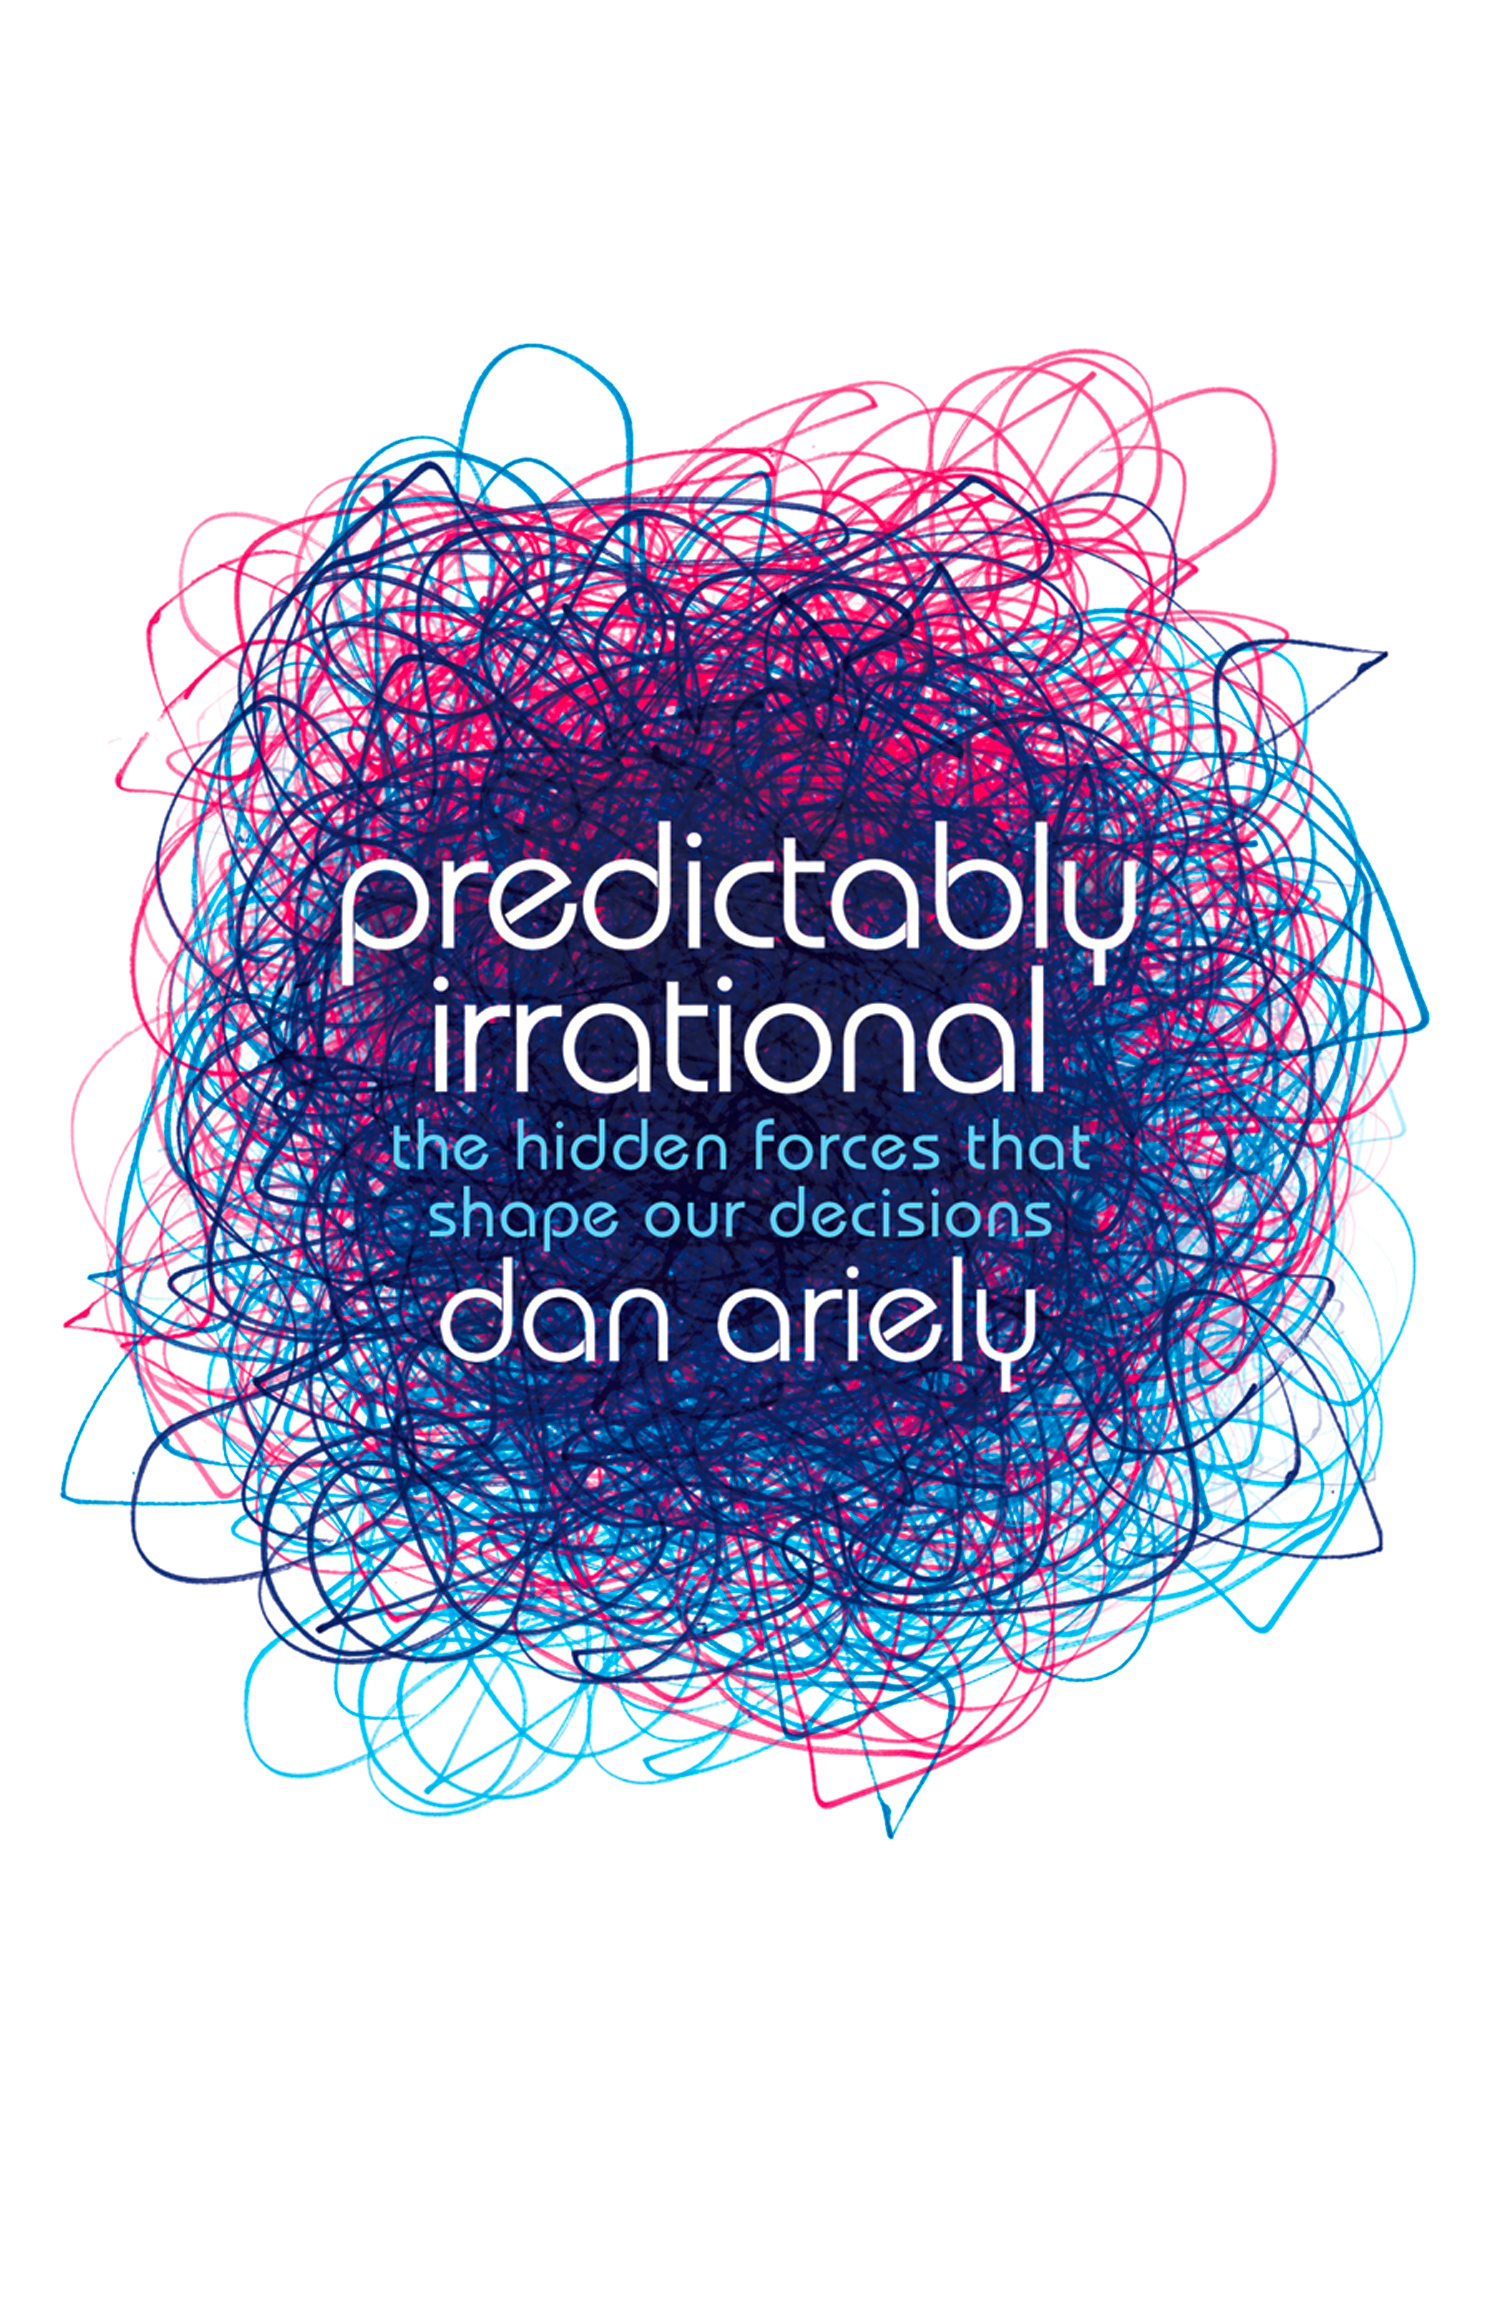 Книга Predictably Irrational из серии , созданная Dan Ariely, может относится к жанру Общая психология, Общая психология, Зарубежная психология. Стоимость электронной книги Predictably Irrational с идентификатором 39746881 составляет 505.87 руб.